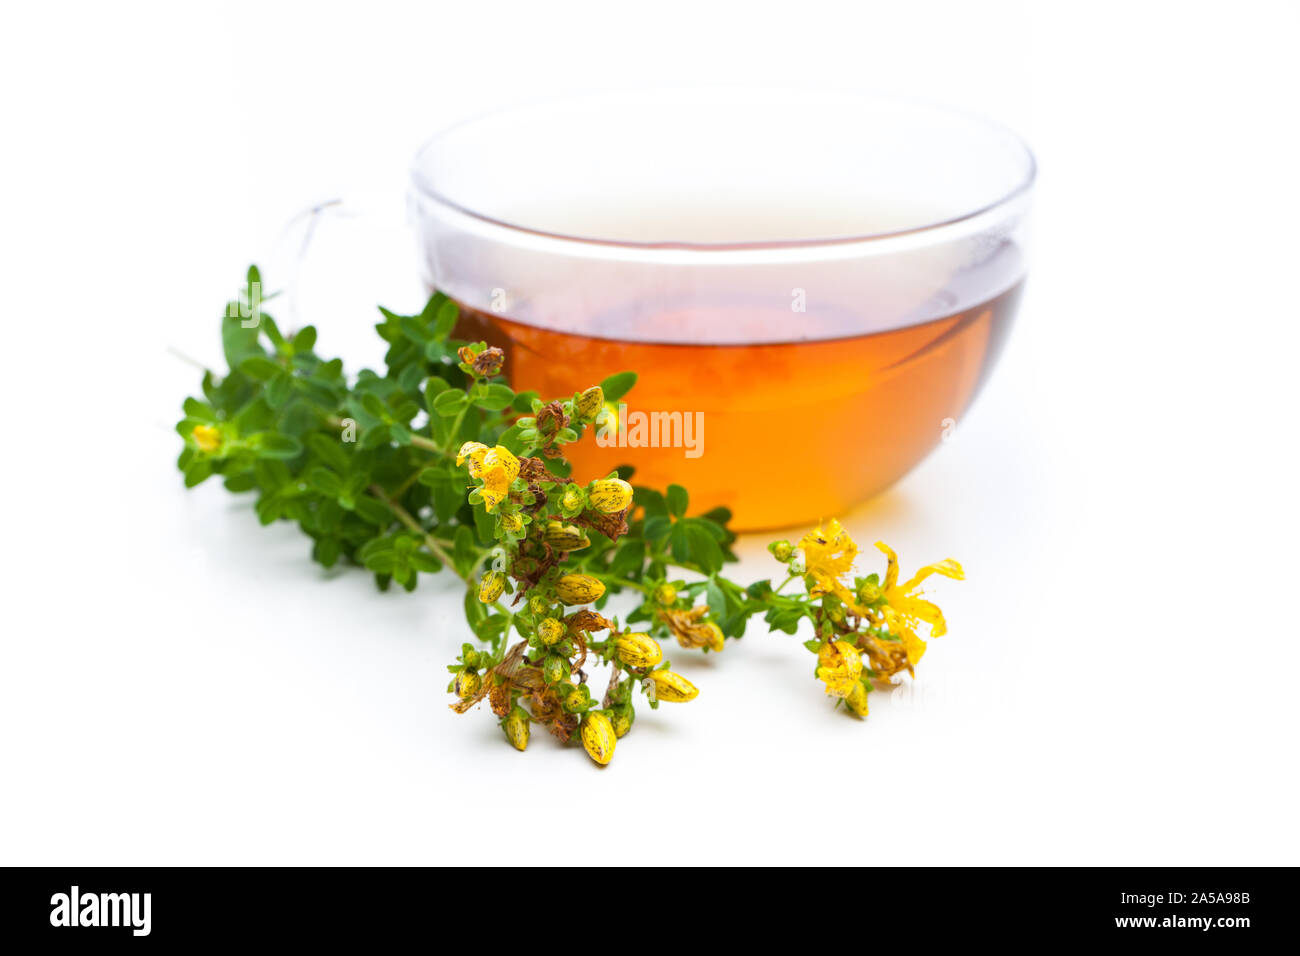 Plantas medicinales: hierba de San Juan (Hypericum perforatum) y el té es una planta con flores. Foto de stock